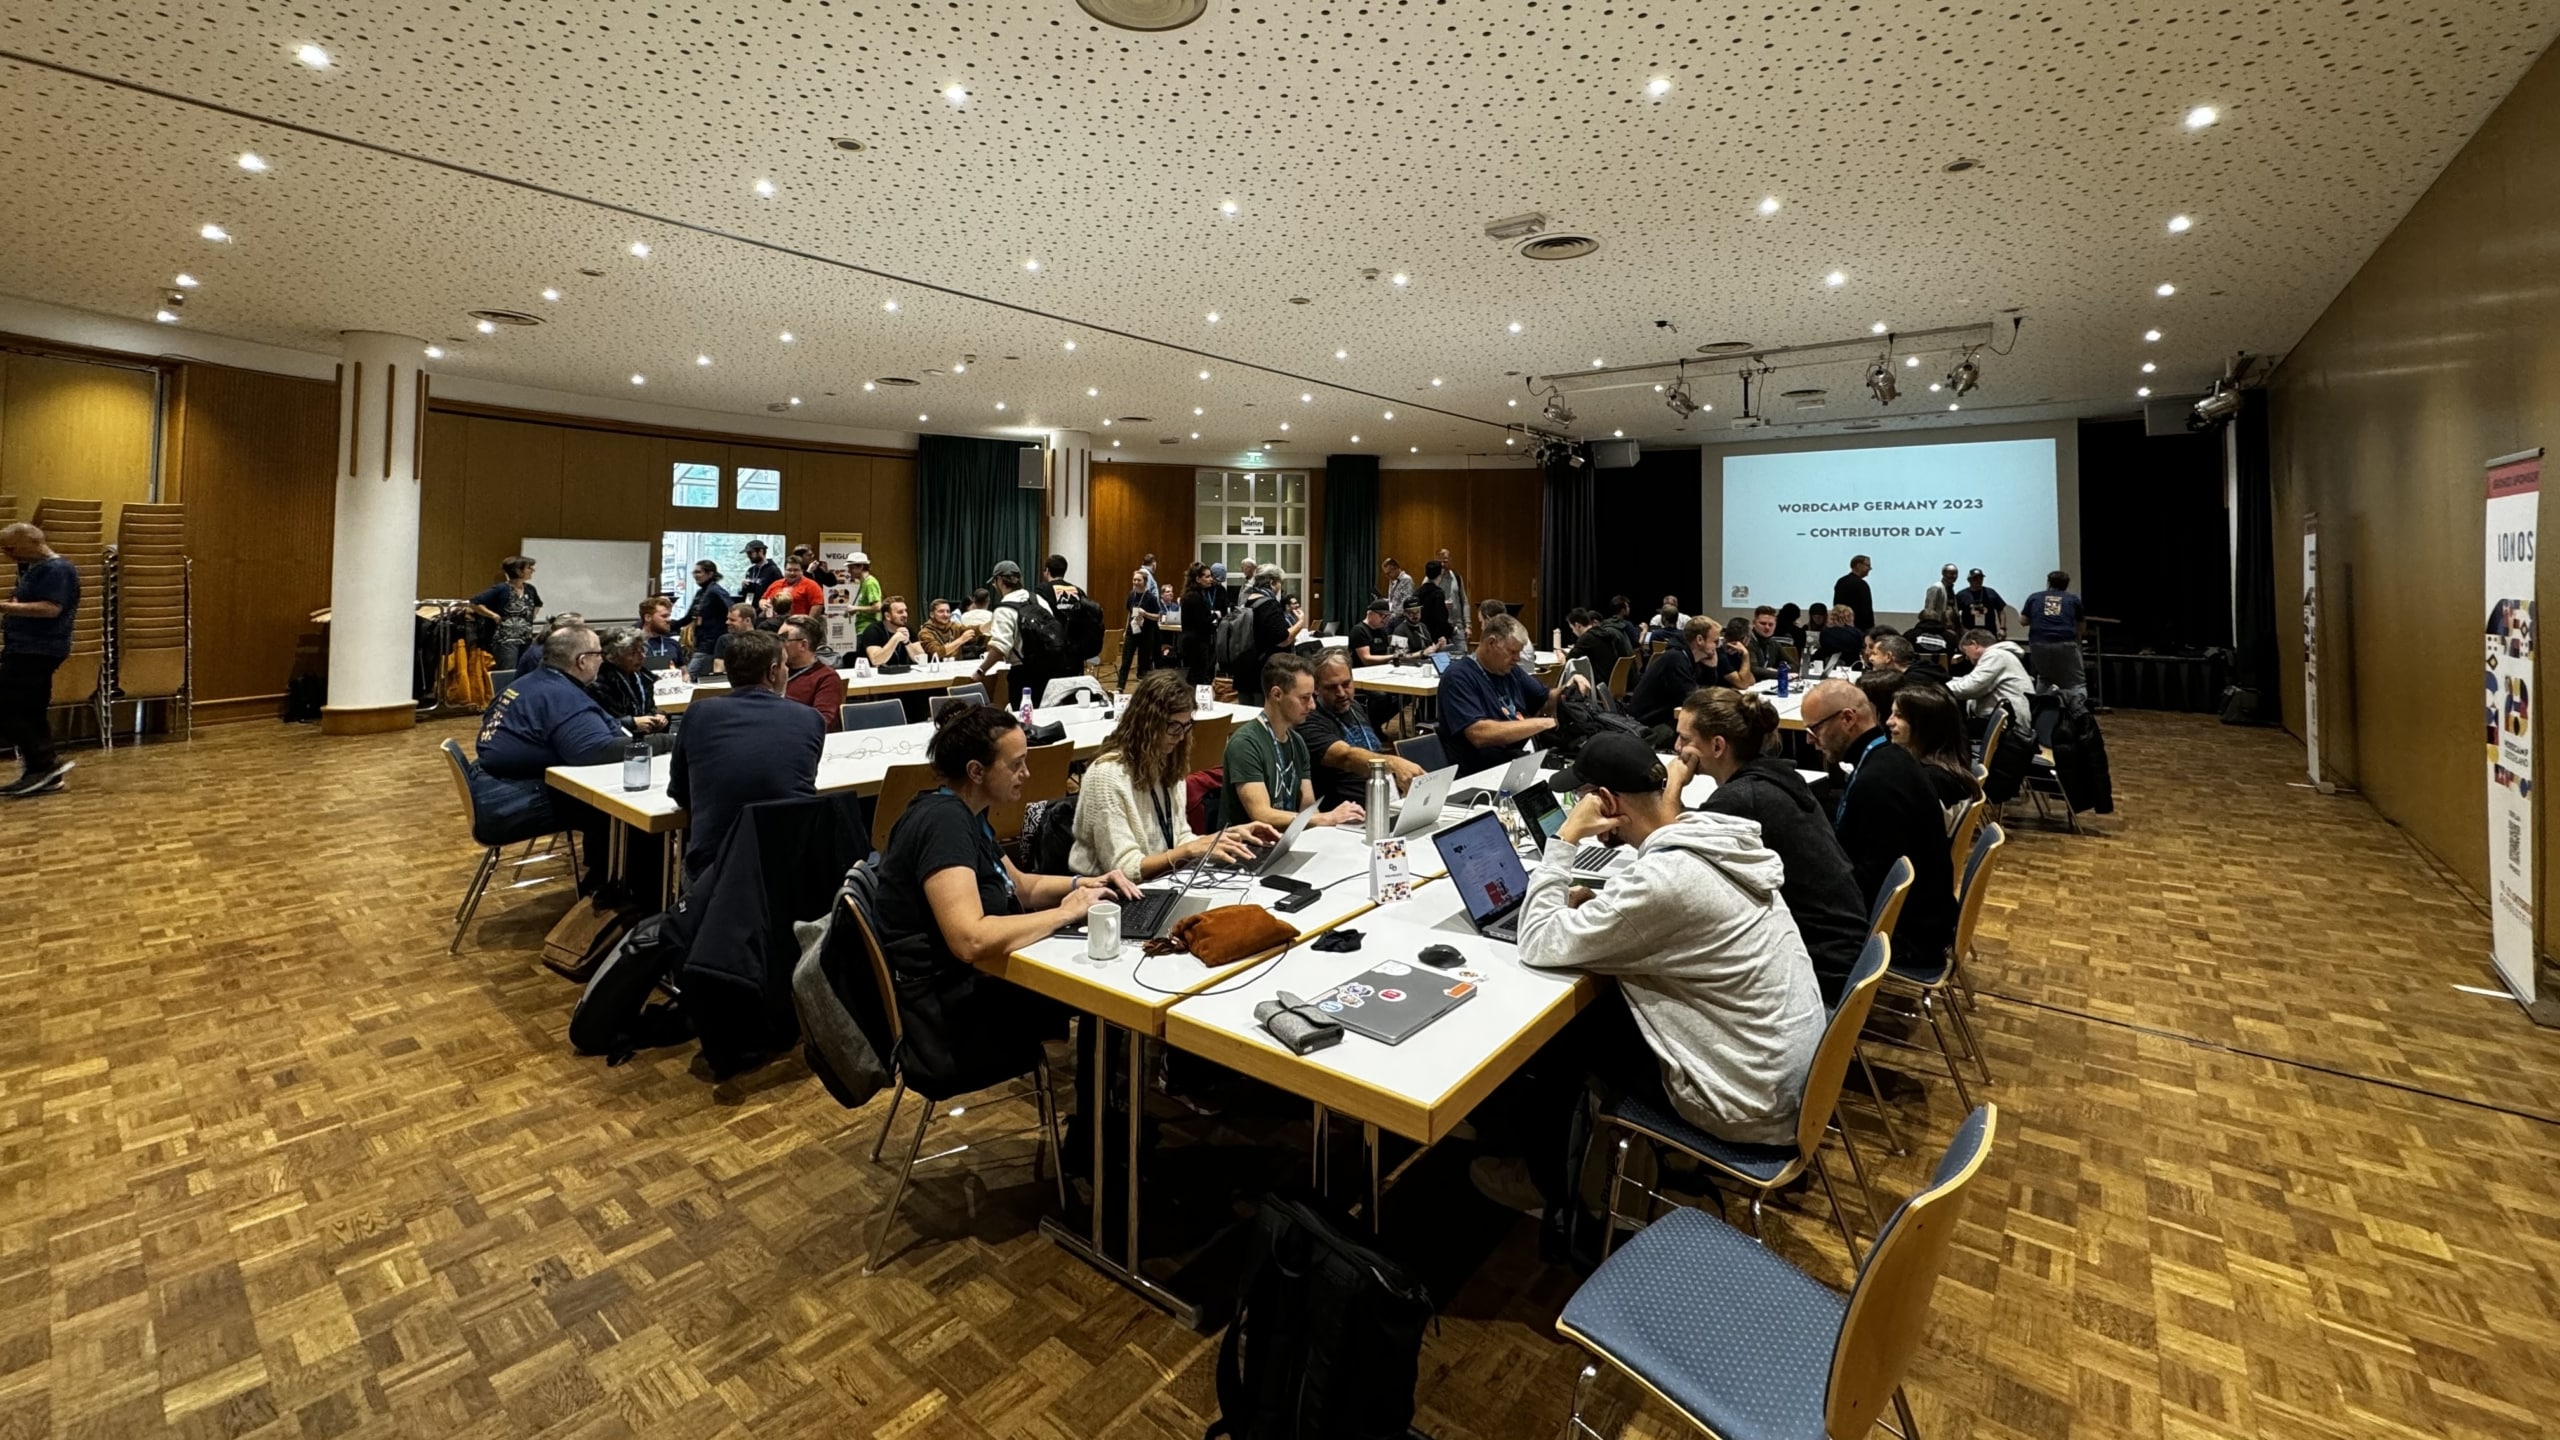 WordCamp Deutschland Konferenzraum mit Teilnehmern und Präsentation.